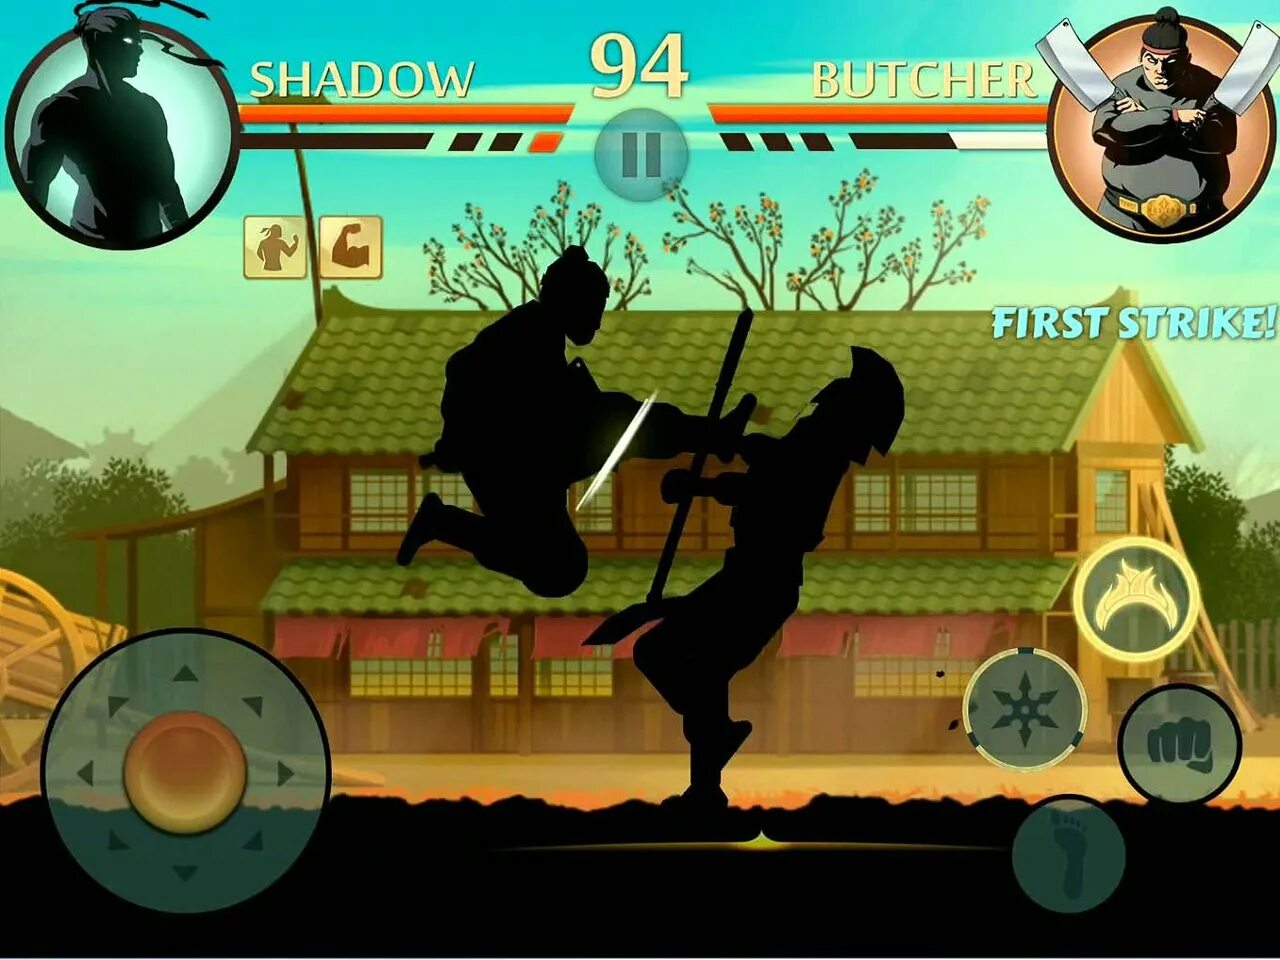 Шедоу файт 1. Shadow Fight 2. Шадоу ниндзя игра. Тень из игры Shadow Fight 2. Игра шадофайт